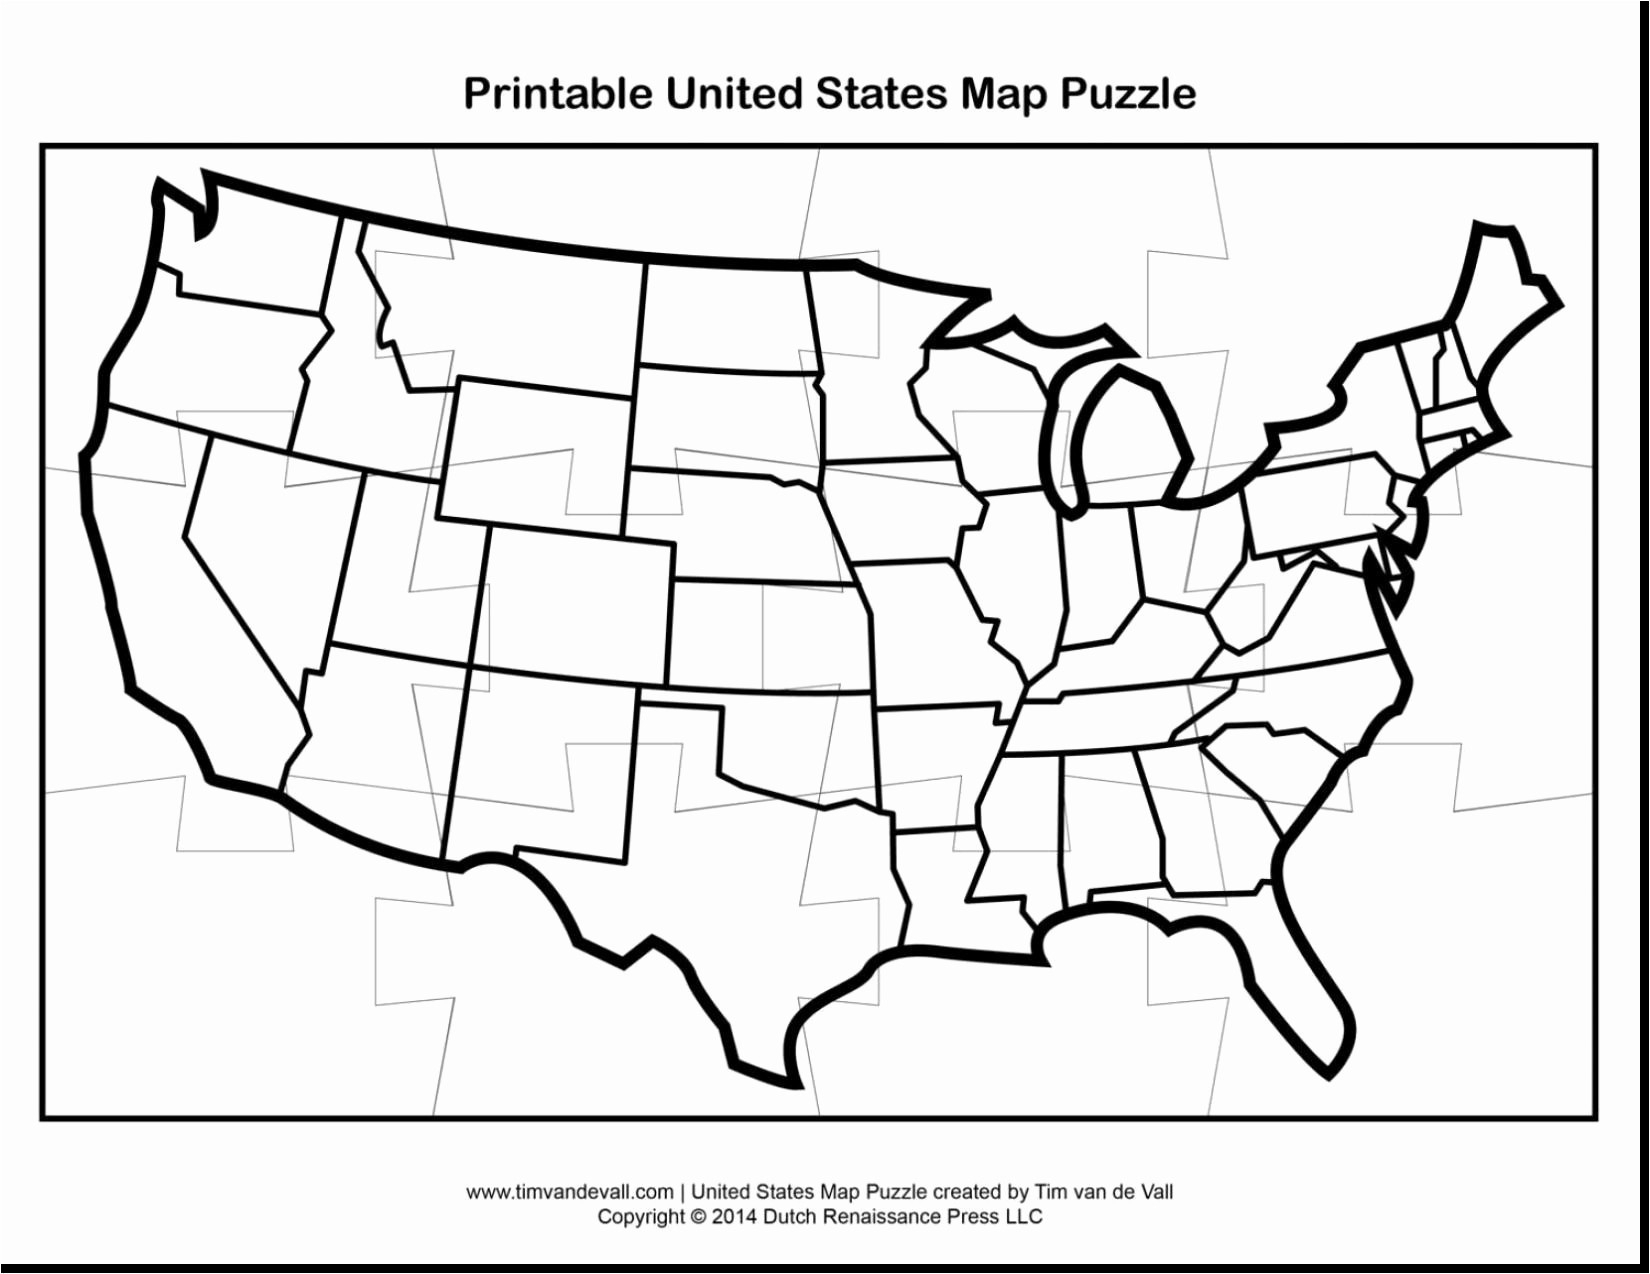 United States Map Jigsaw Puzzle Valid United States Map Puzzle Valid - Printable Puzzle Map Of The United States